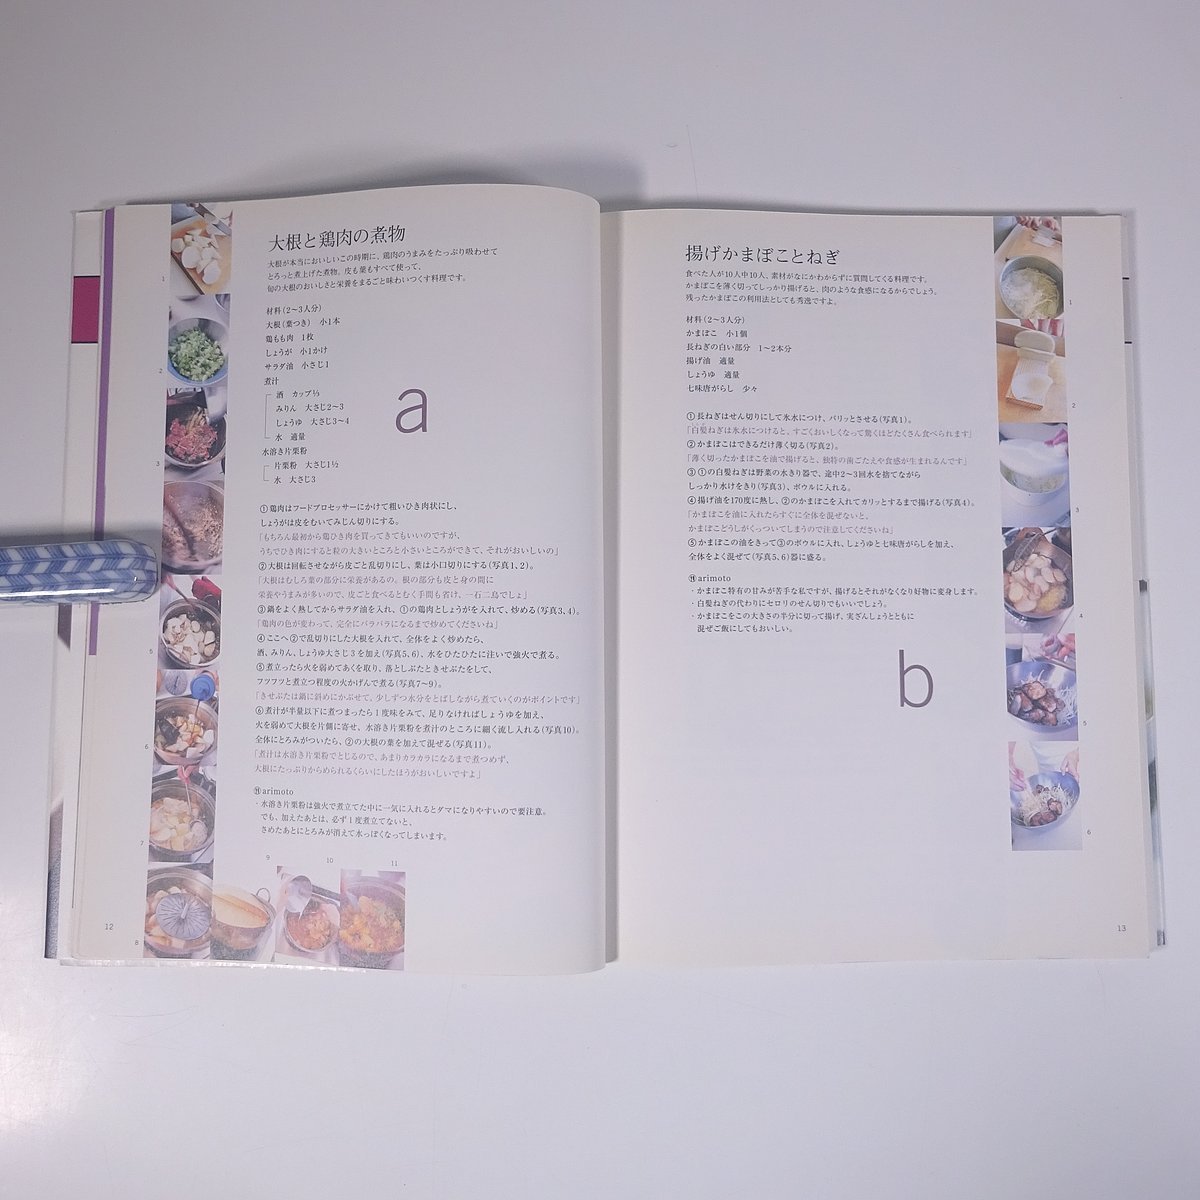 有元葉子の料理教室 講談社MOOK 2002 大型本 料理 献立 レシピ 家庭料理_画像7